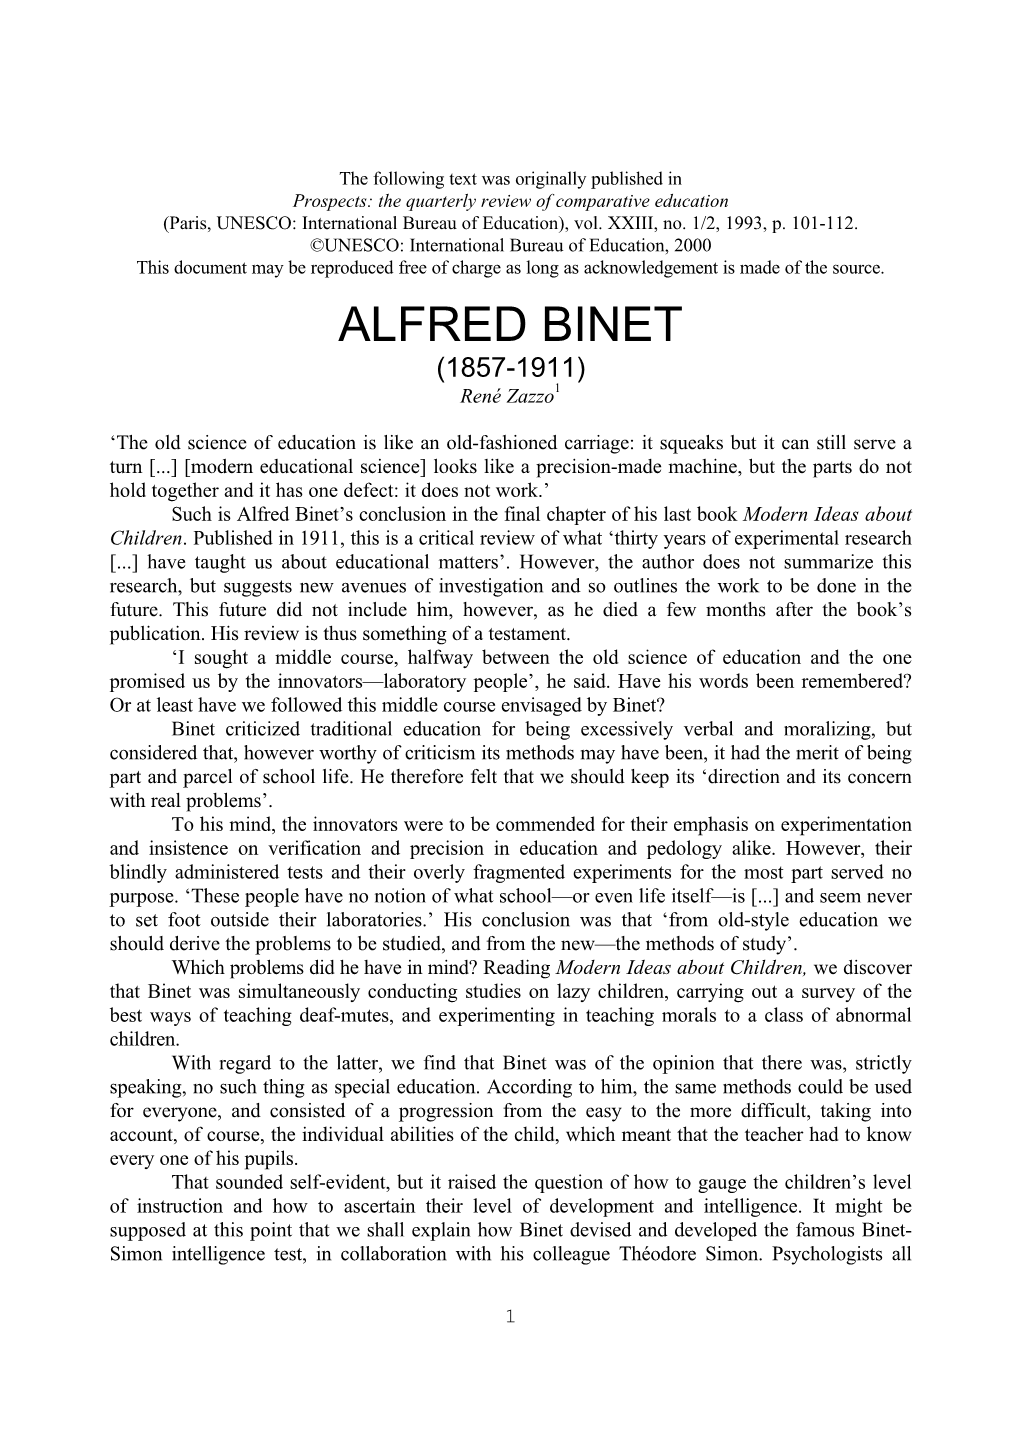 ALFRED BINET (1857-1911) René Zazzo1